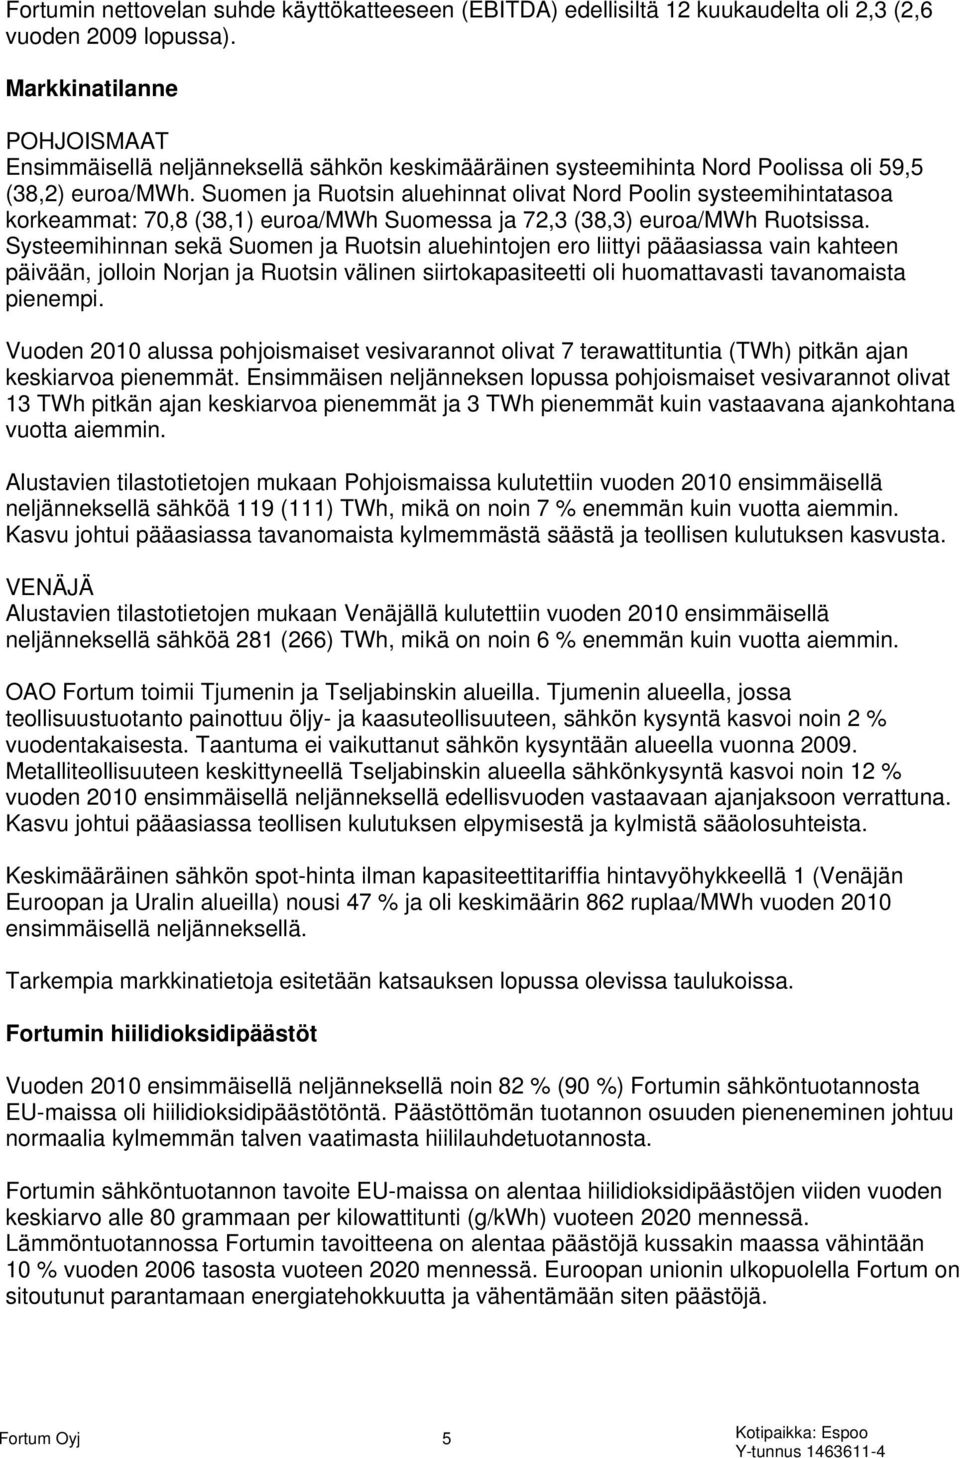 Suomen ja Ruotsin aluehinnat olivat Nord Poolin systeemihintatasoa korkeammat: 70,8 (38,1) euroa/mwh Suomessa ja 72,3 (38,3) euroa/mwh Ruotsissa.